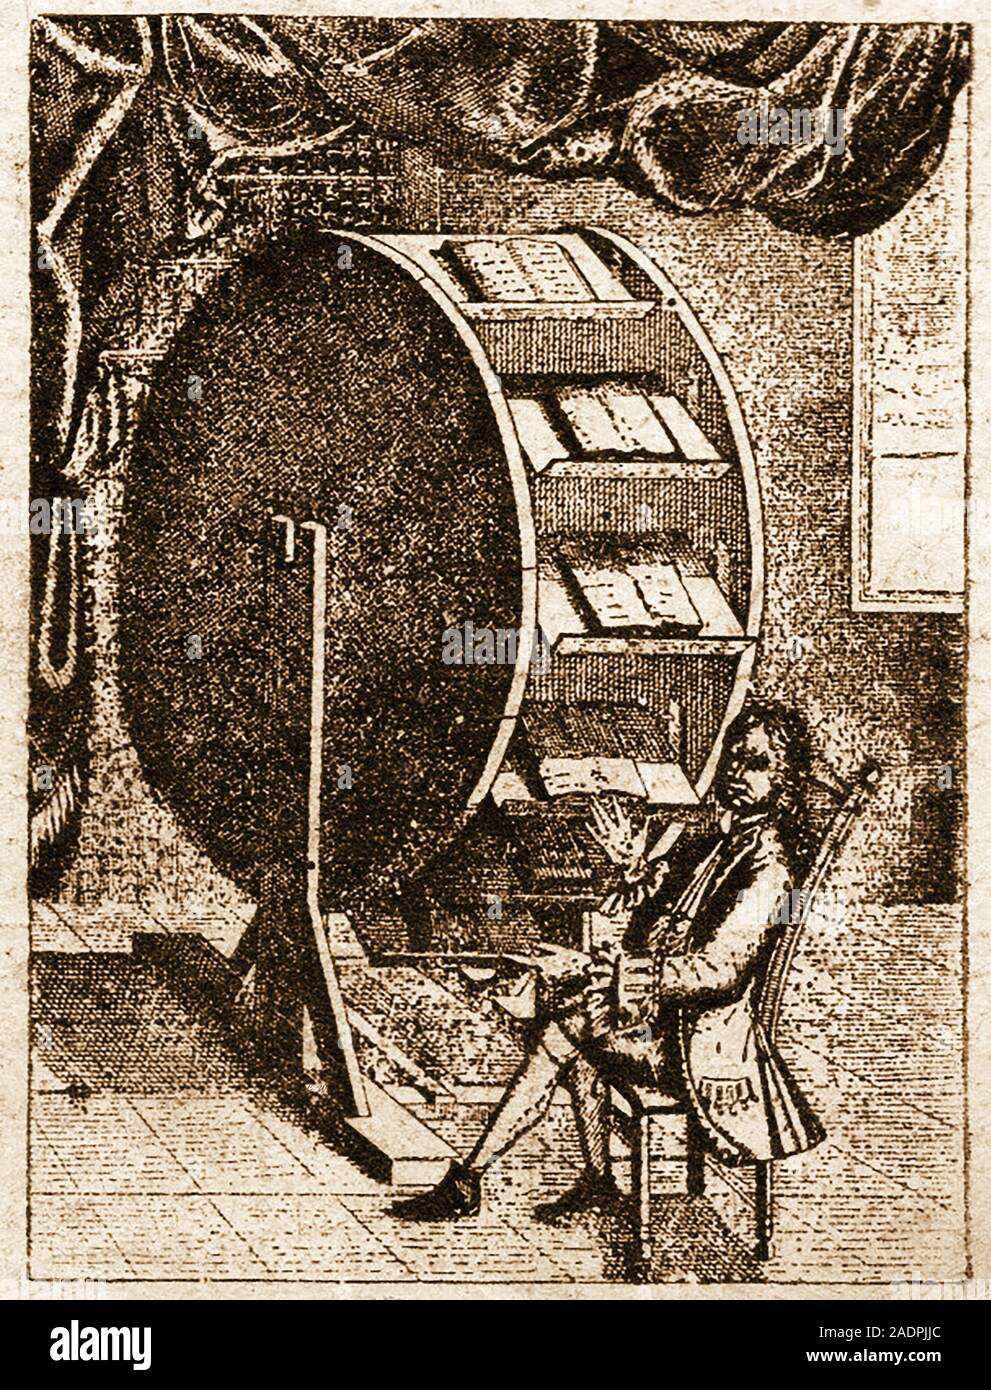 Seltsam frühen Erfindungen - Rotary revolvierenden Buch Fall oder platzsparende Bibliothek. Stockfoto